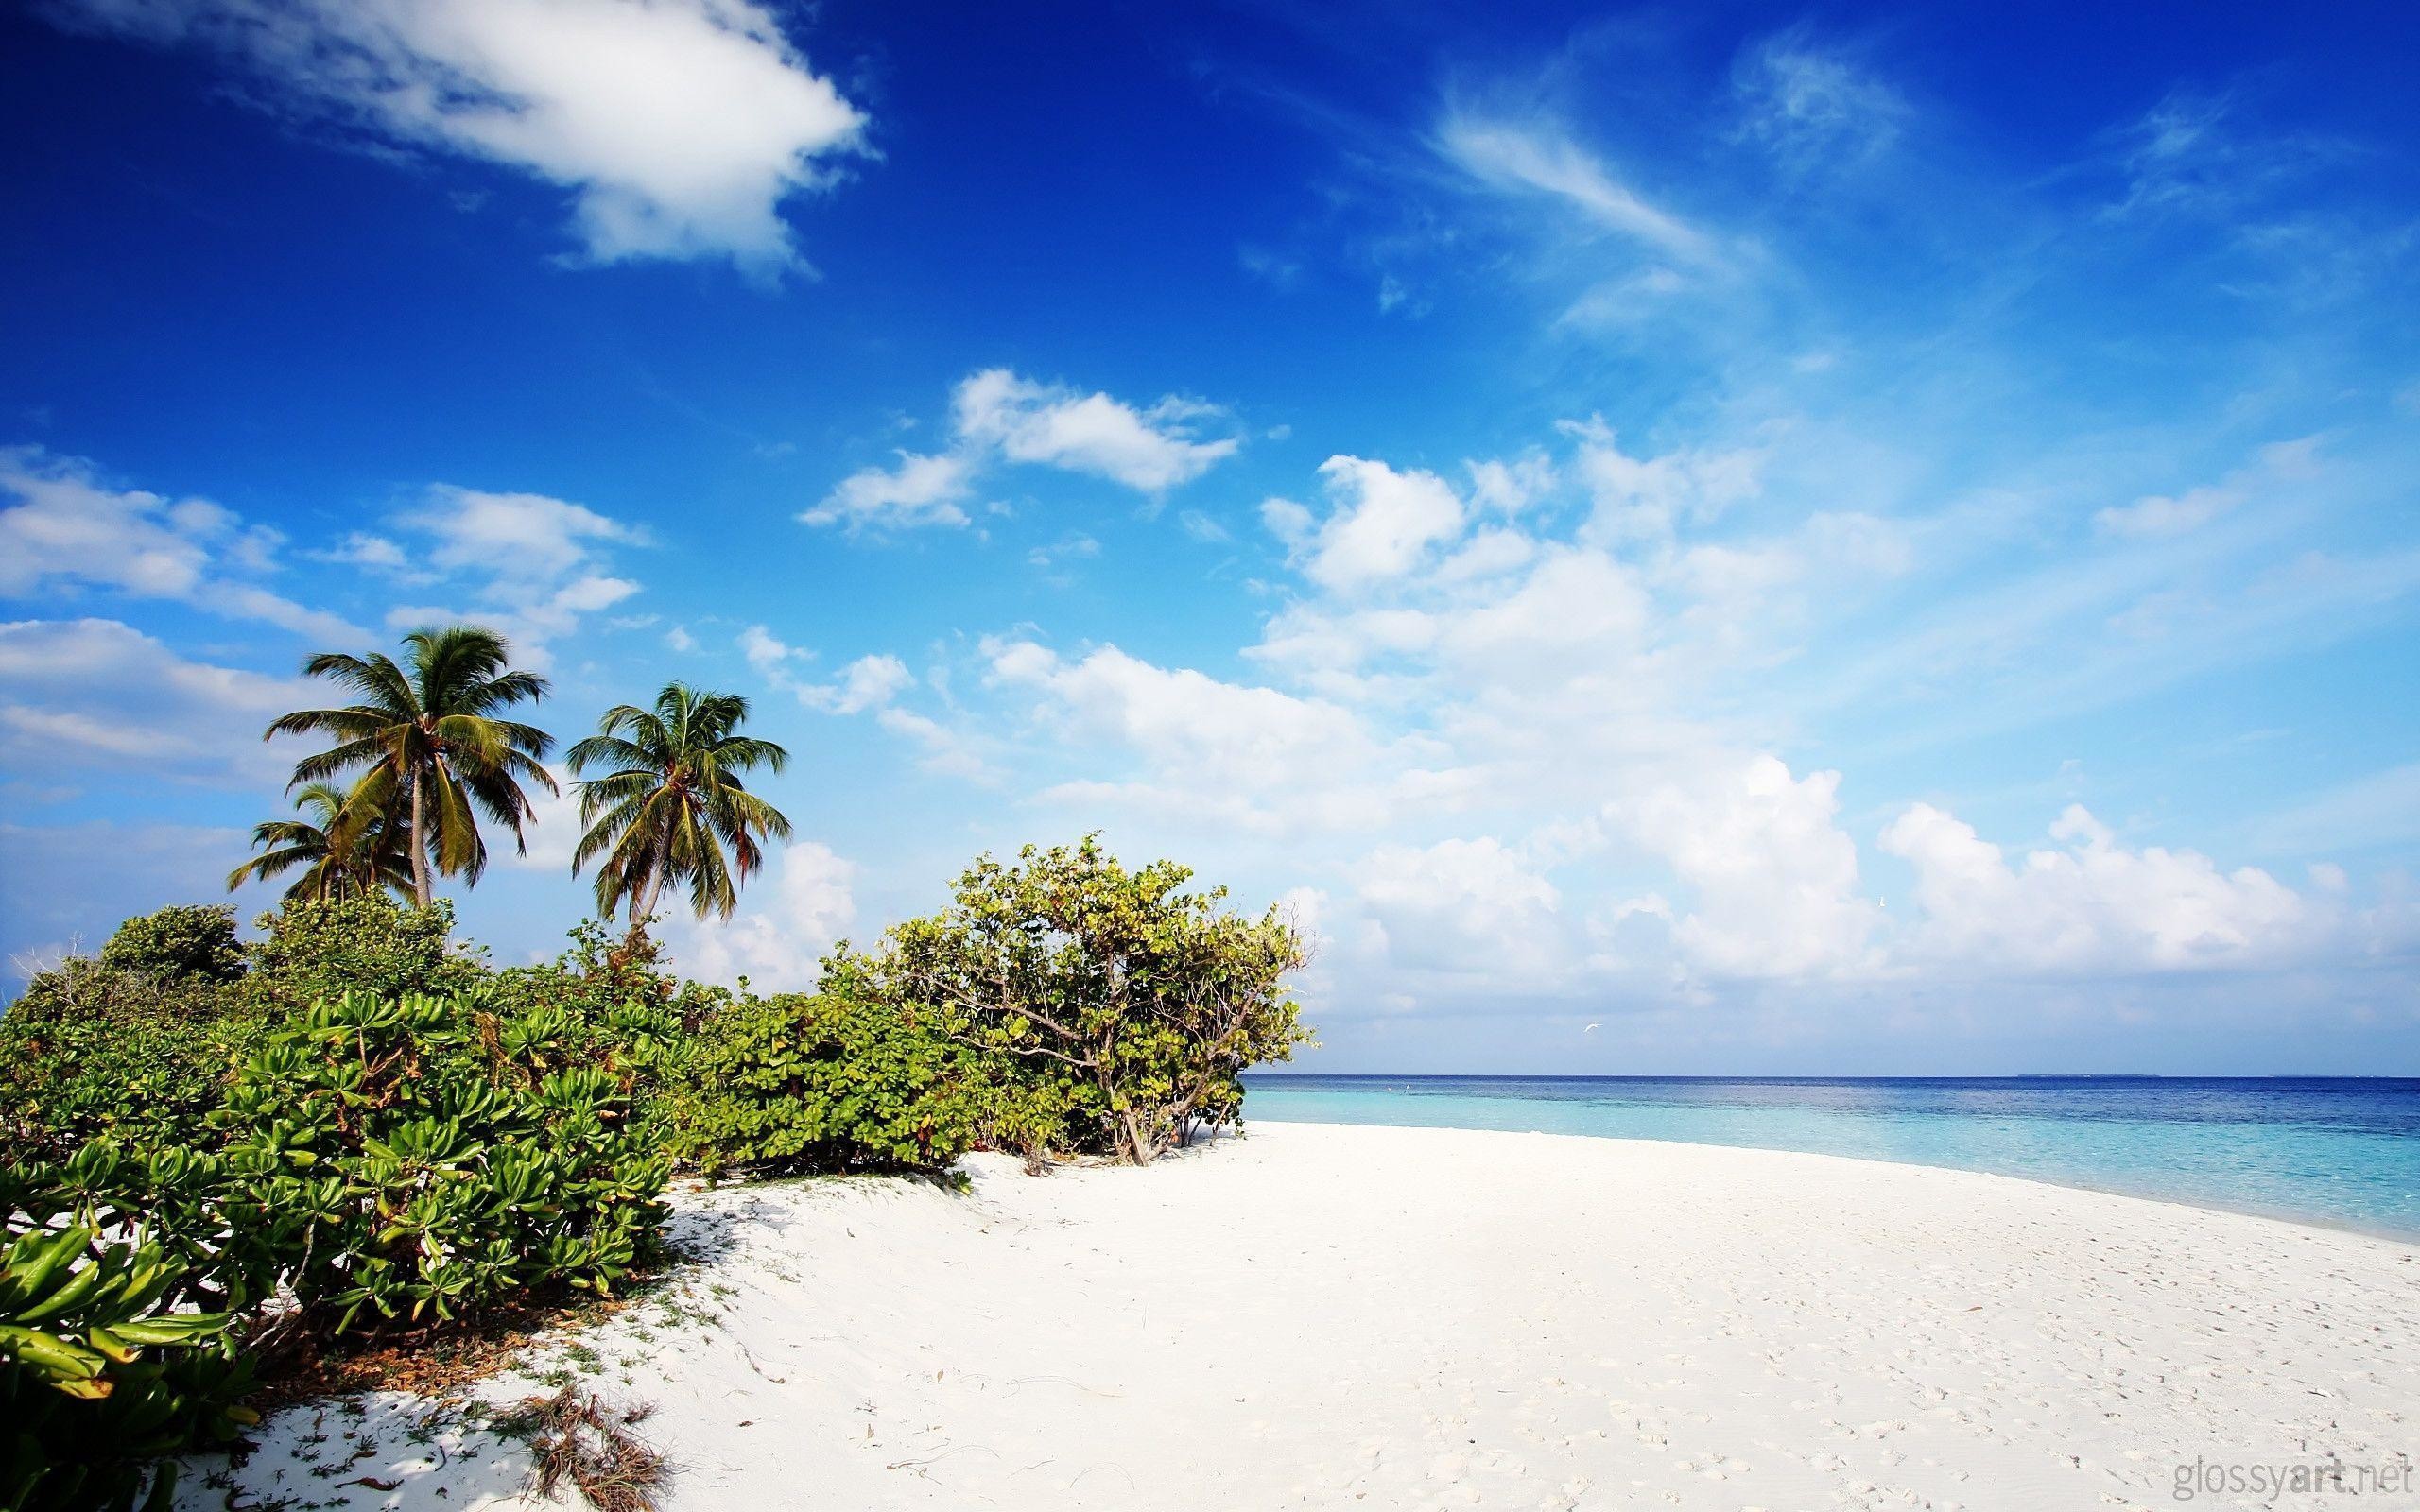 2560x1600 Beaches & Islands HD Wallpapers | Beach Desktop Backgrounds,Stock .